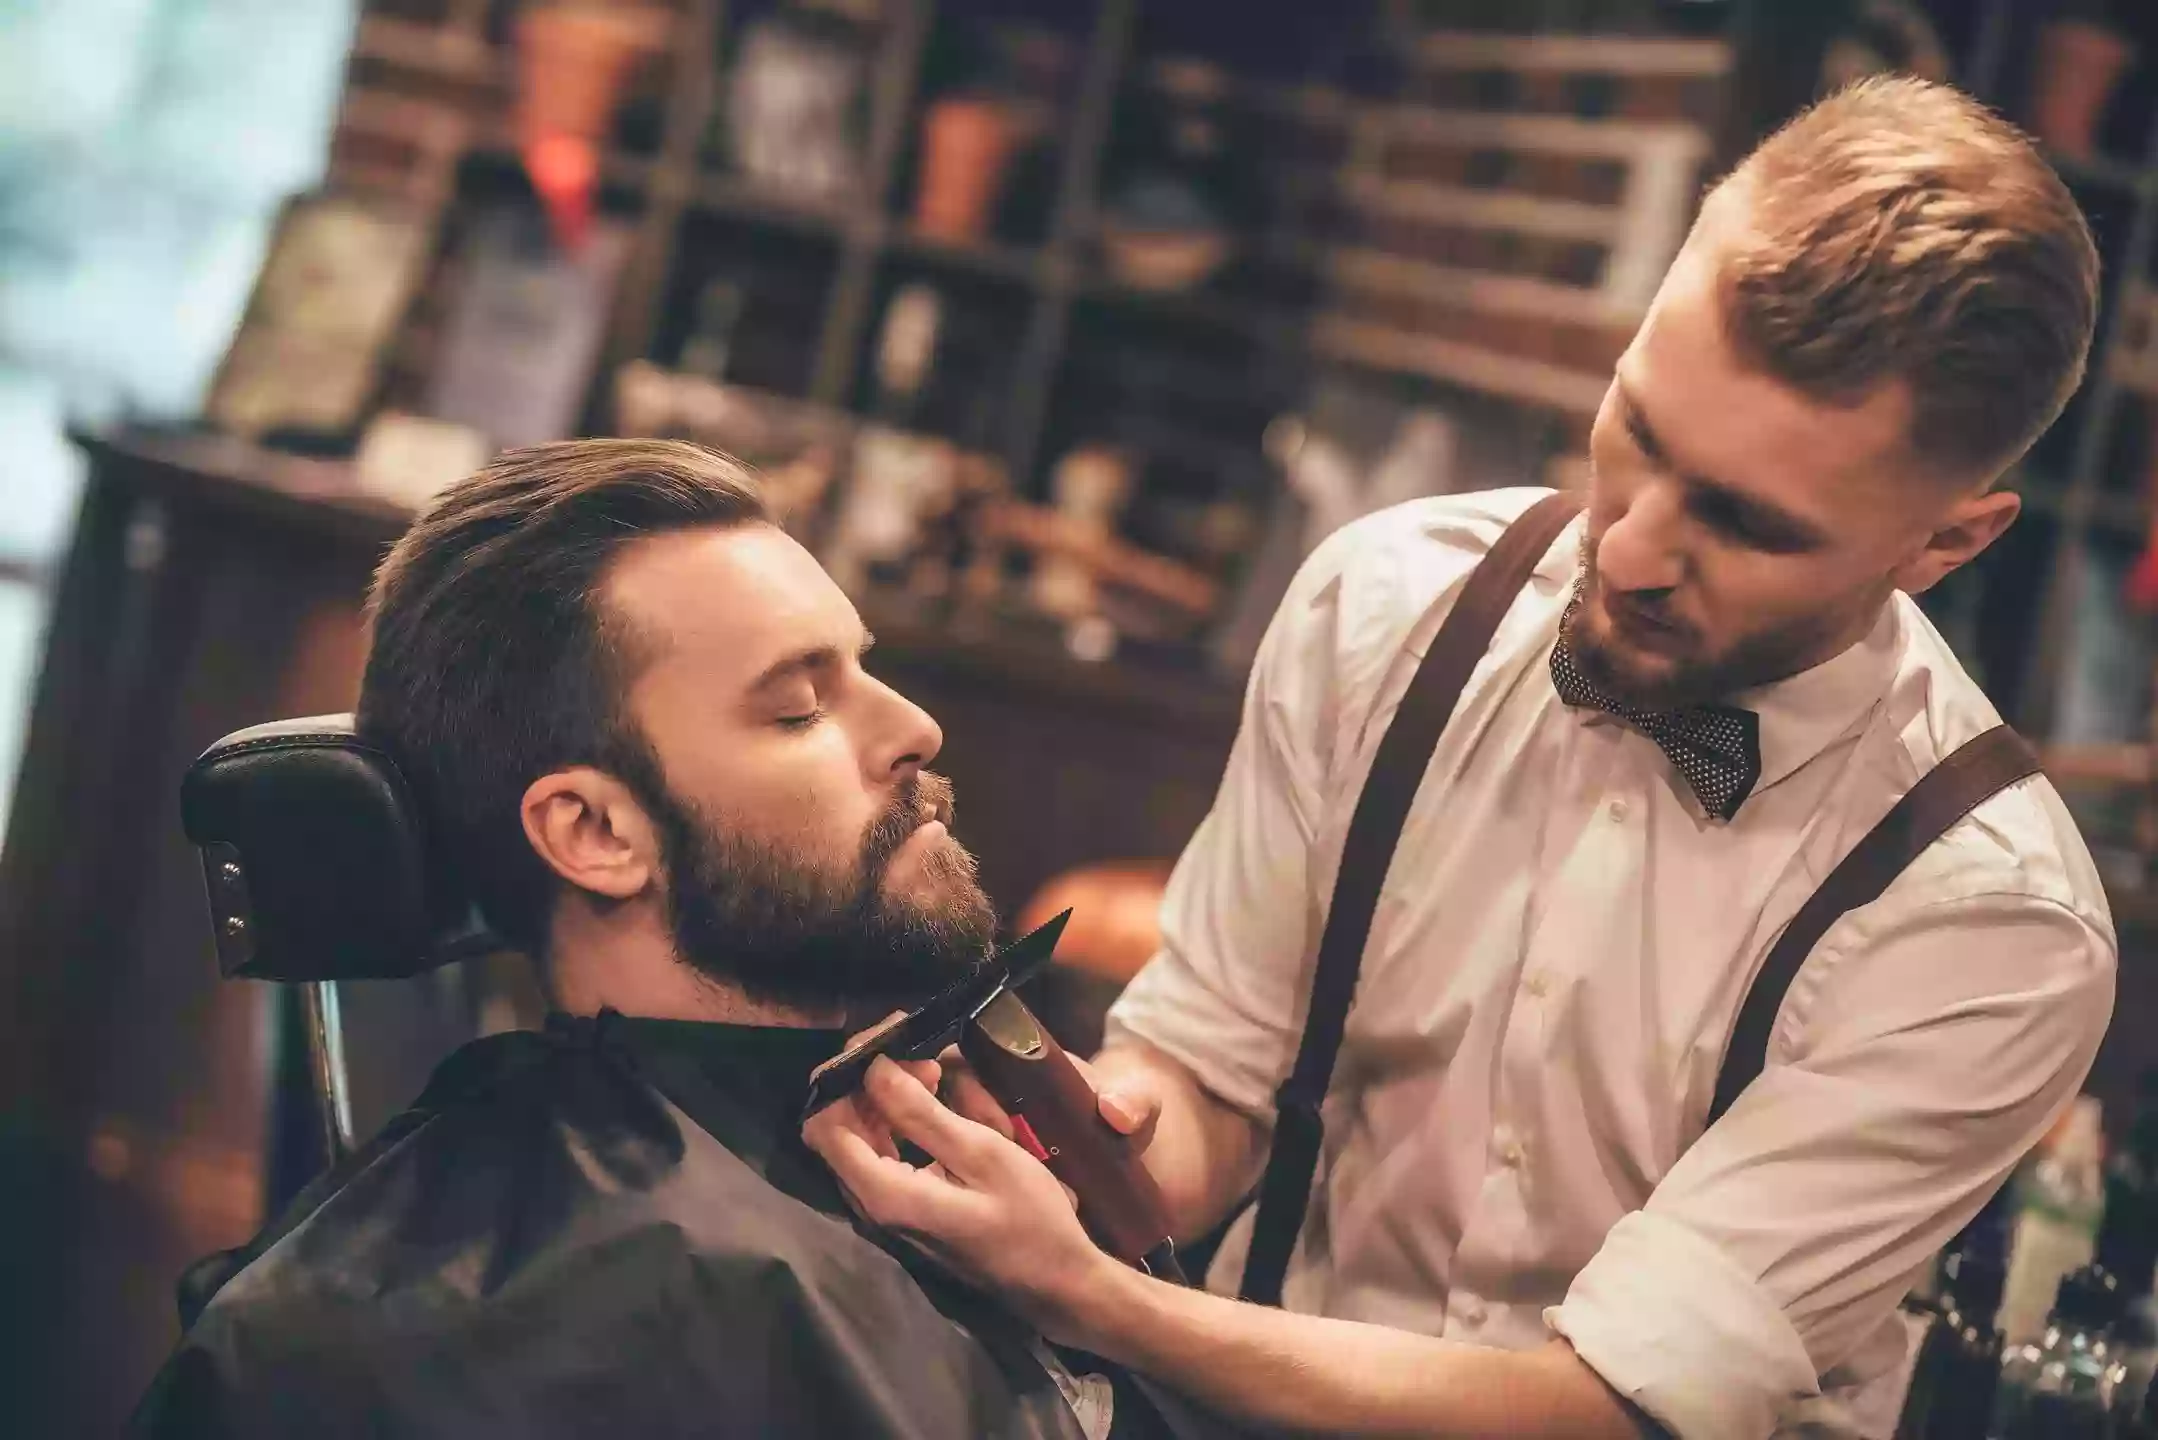 The Cutting Lounge Barbershop